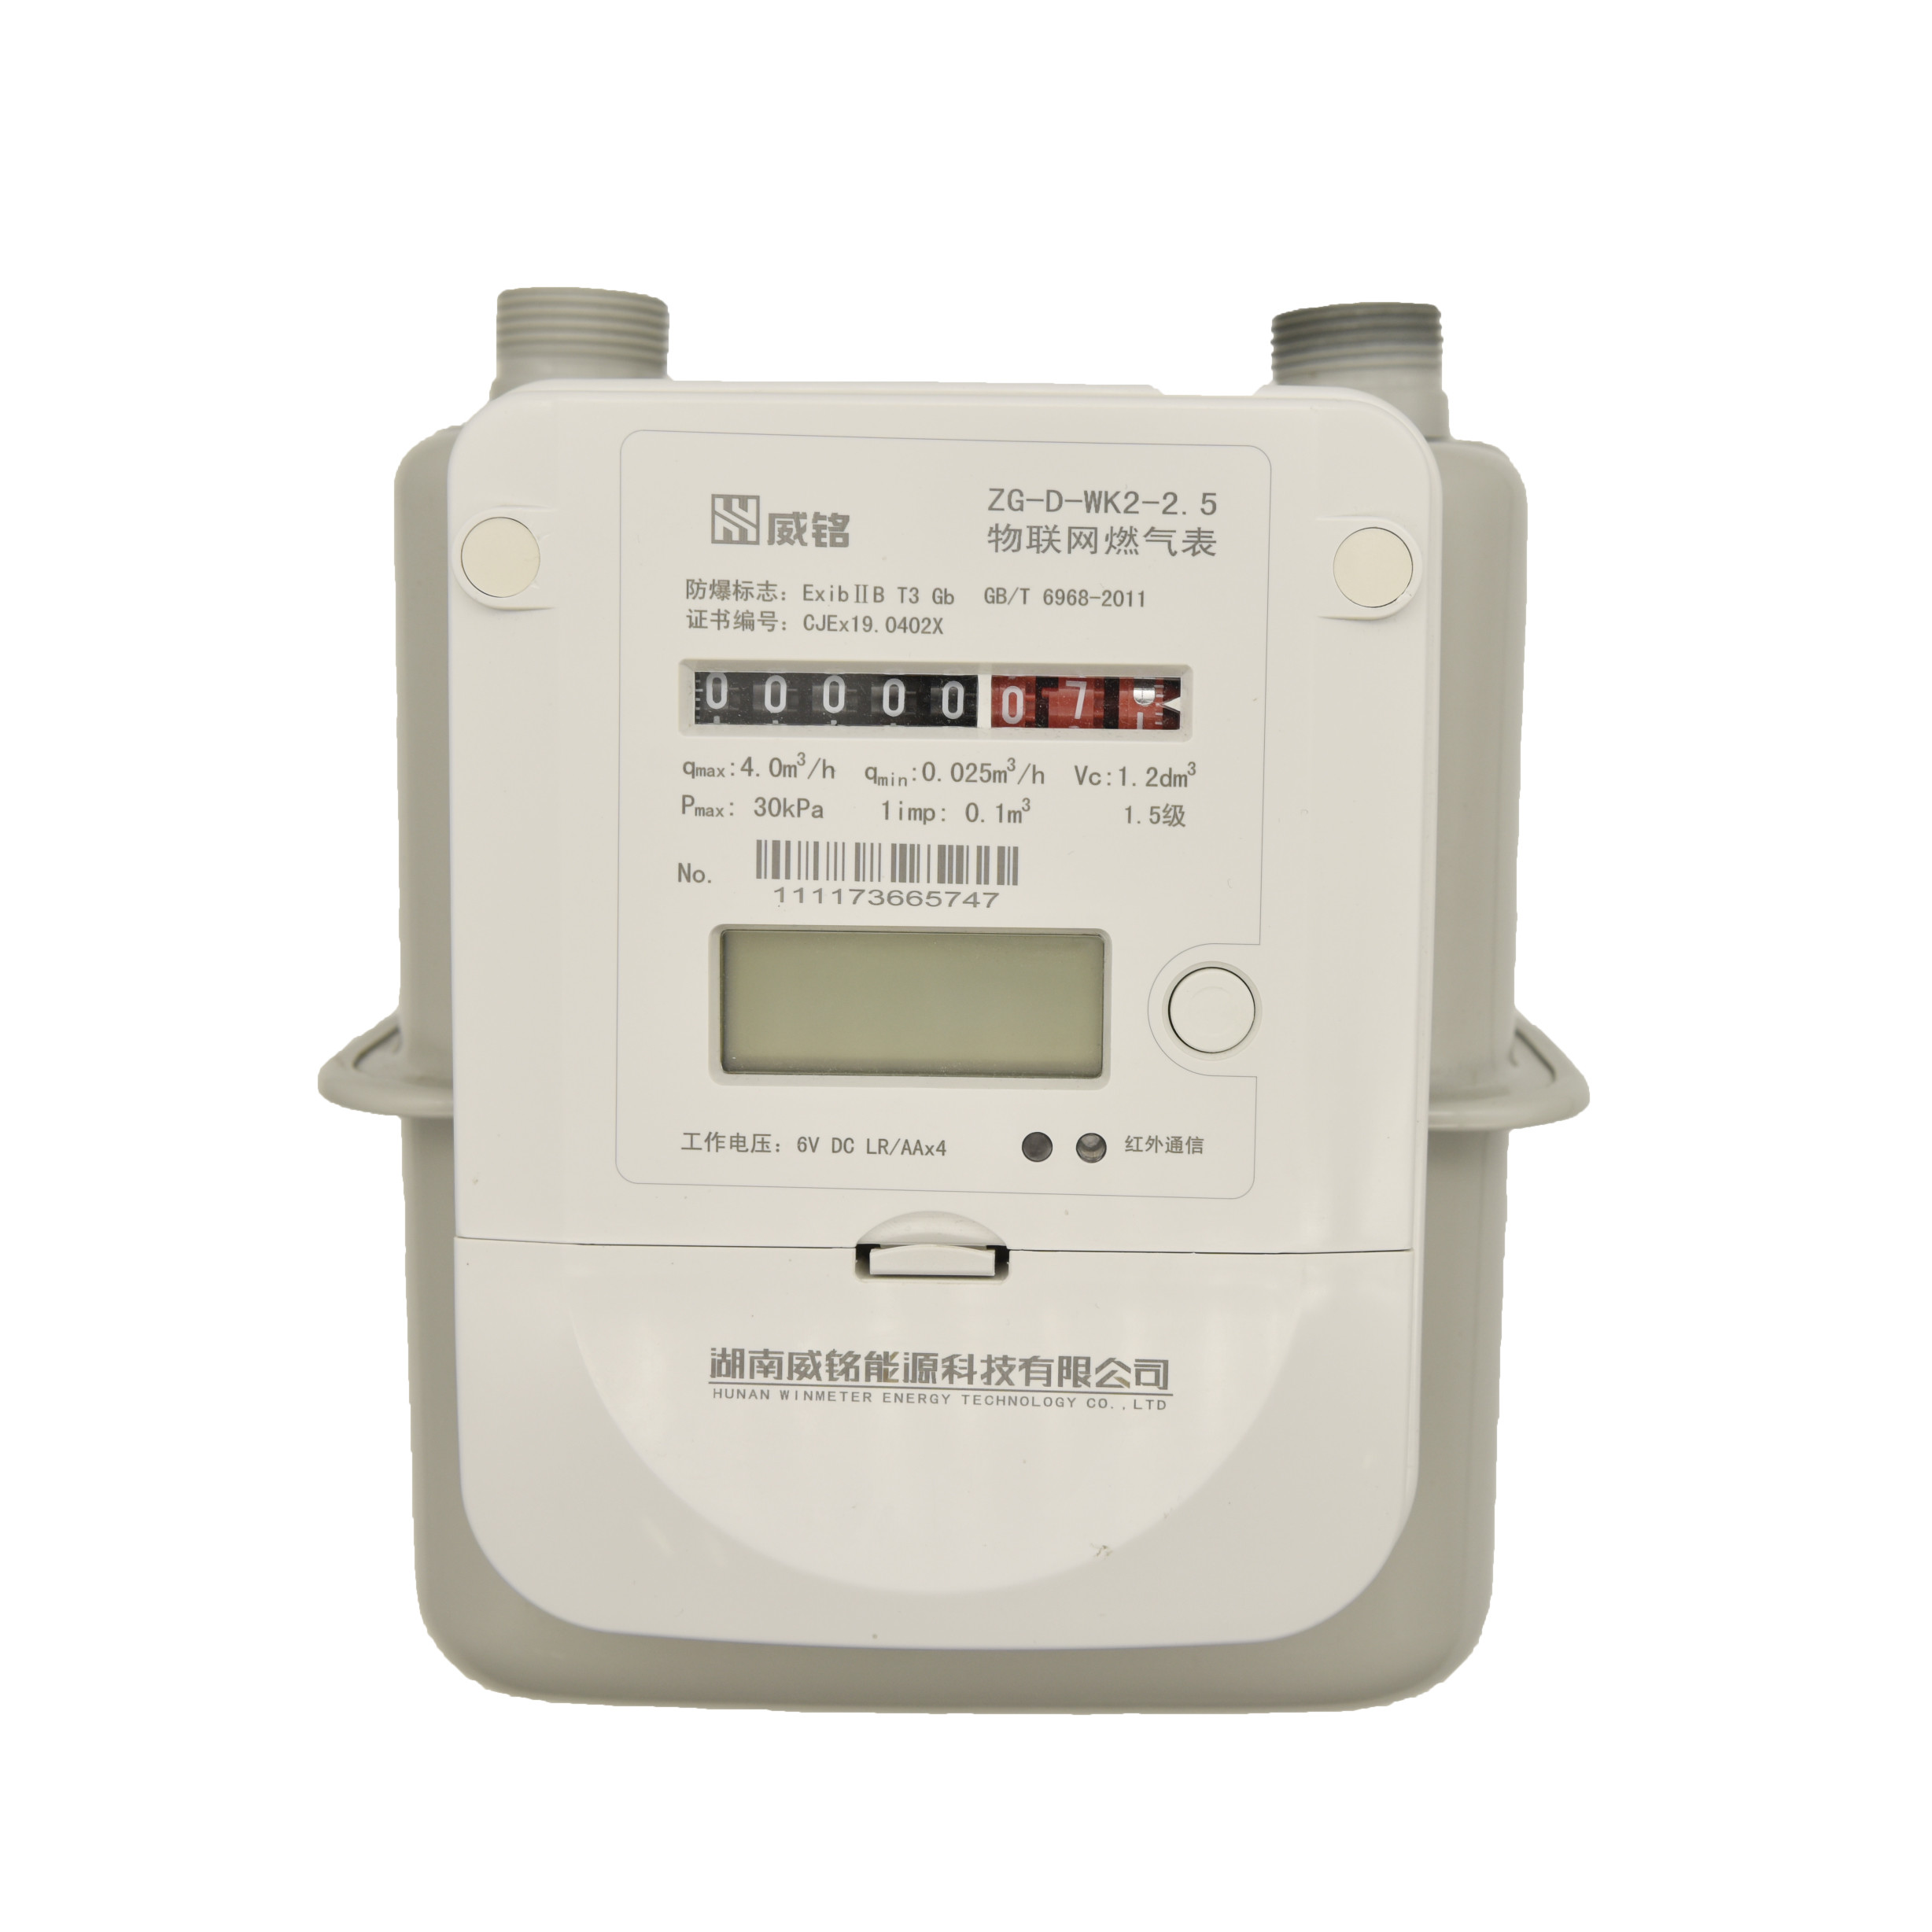 how-to-recharge-titas-gas-digital-prepaid-meter